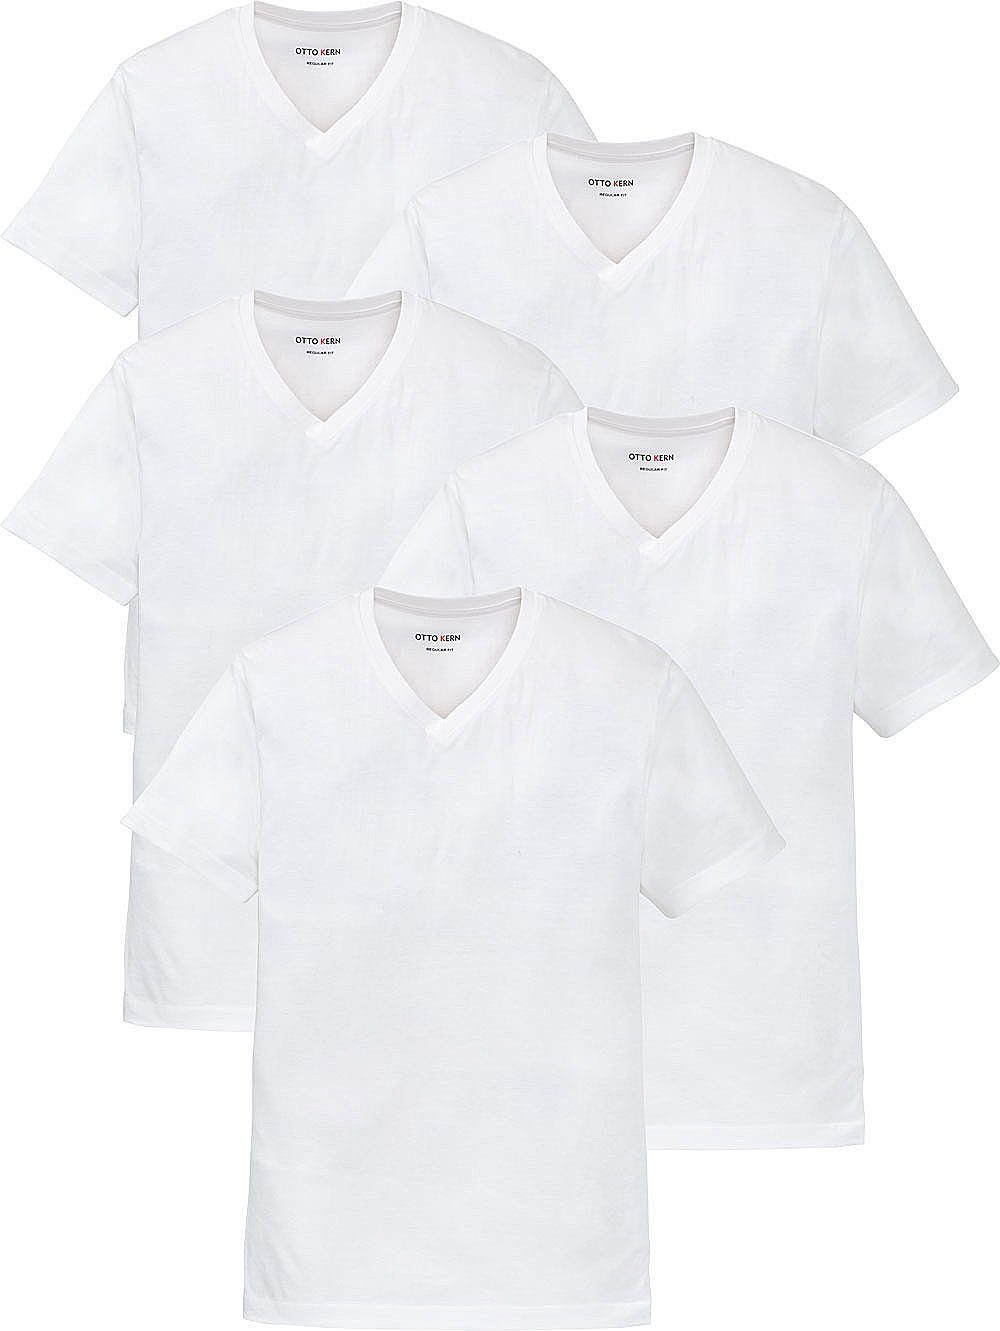 T-Shirt reiner (5er-Pack) hochwertiger, Kern Otto Baumwolle aus Kurzarmshirt Kern weiß